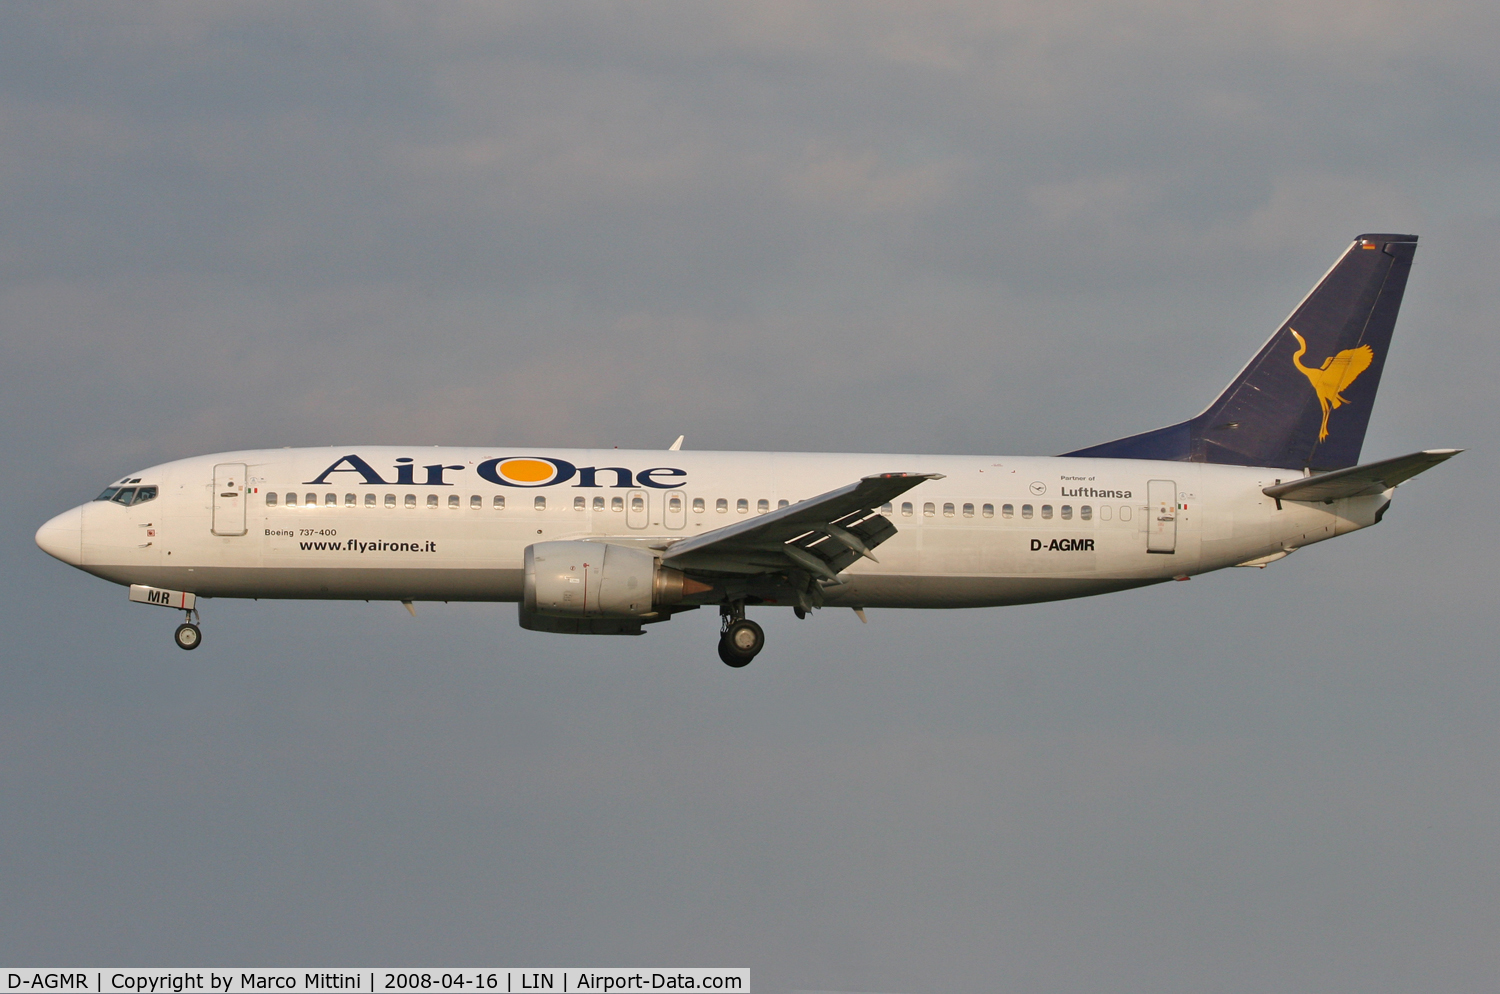 D-AGMR, 1992 Boeing 737-430 C/N 27007, Landing at Milano LIN